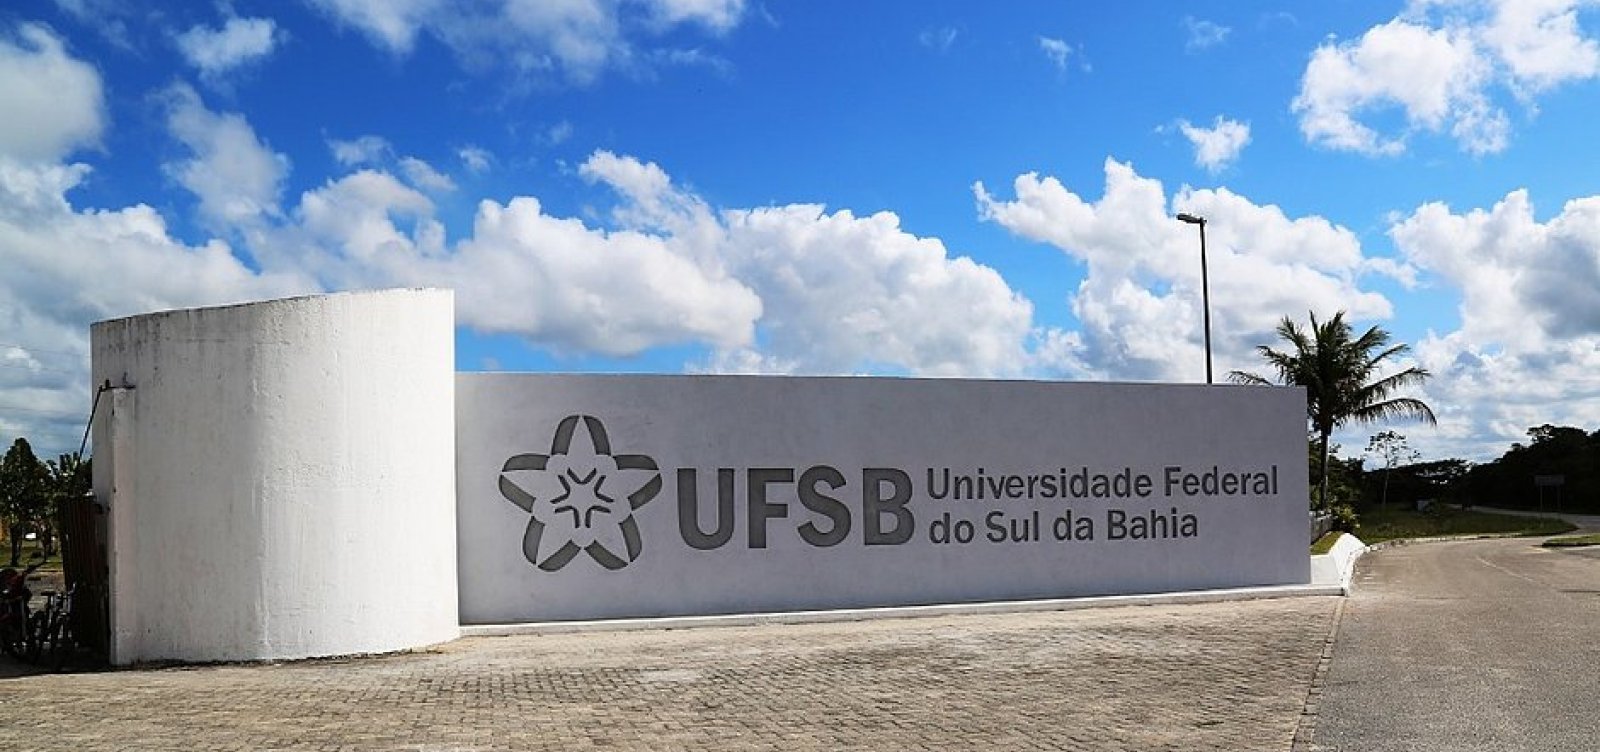 Professores anunciam greve em universidades federais nesta segunda-feira; UFSB está na lista 